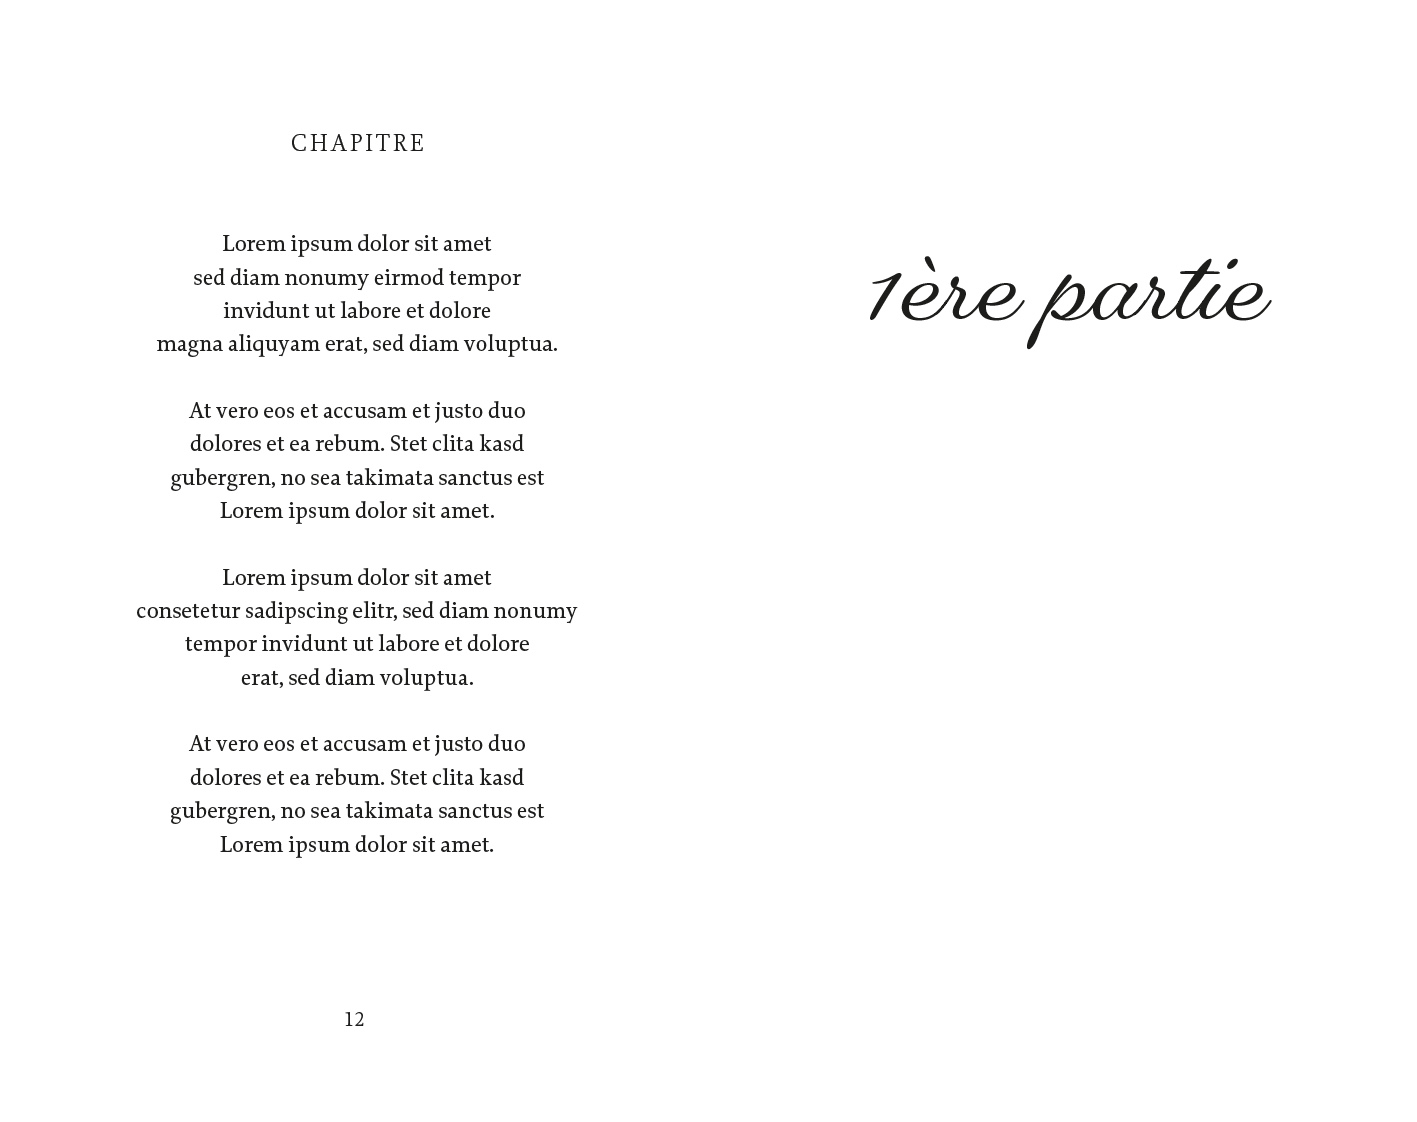 Exemple d'une mise en page de poésie classique version romantique